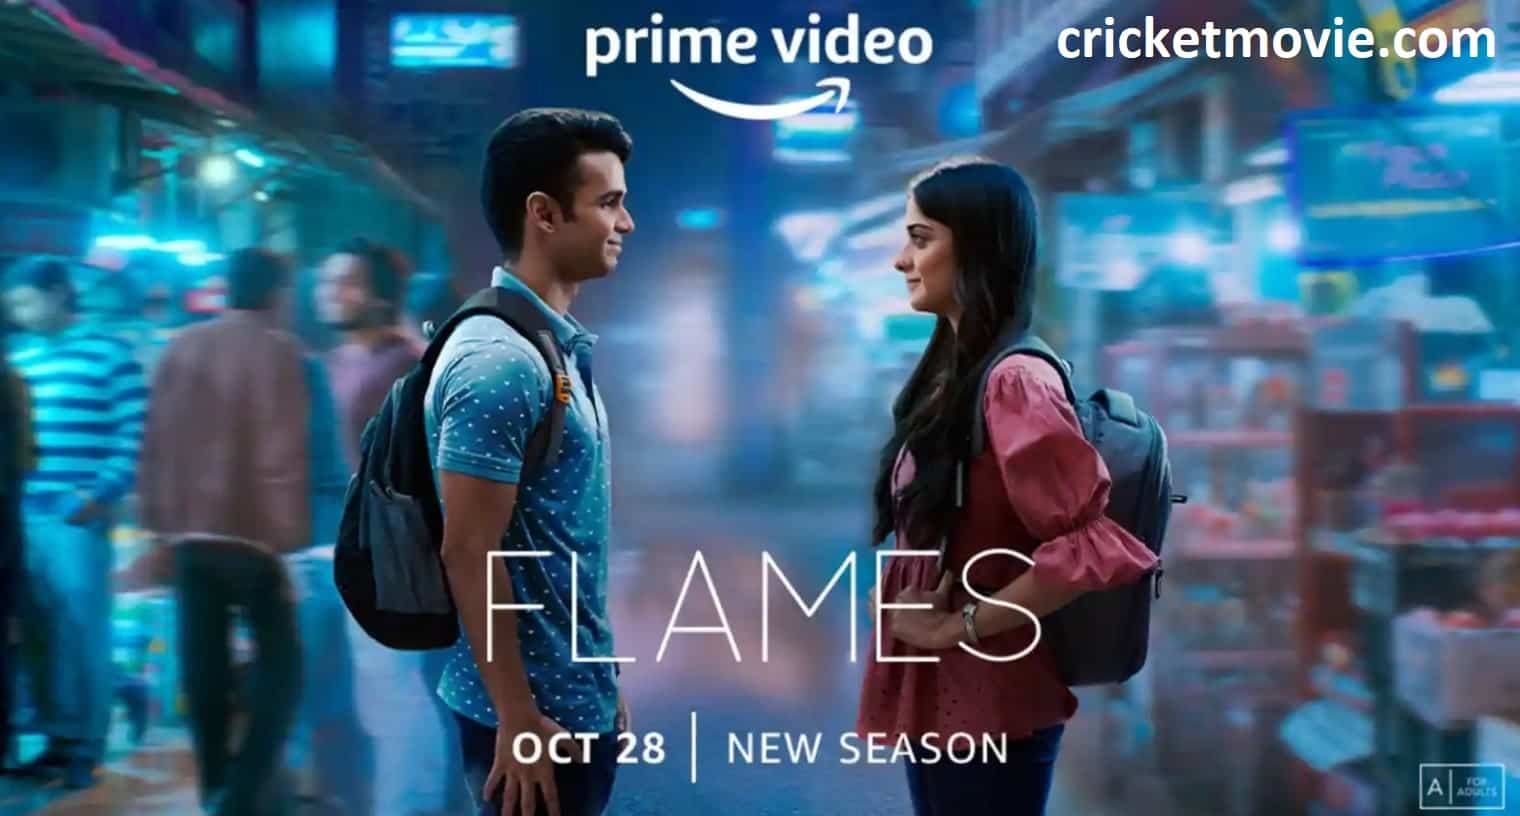 Flames Season 3 review-cricketmovie.com